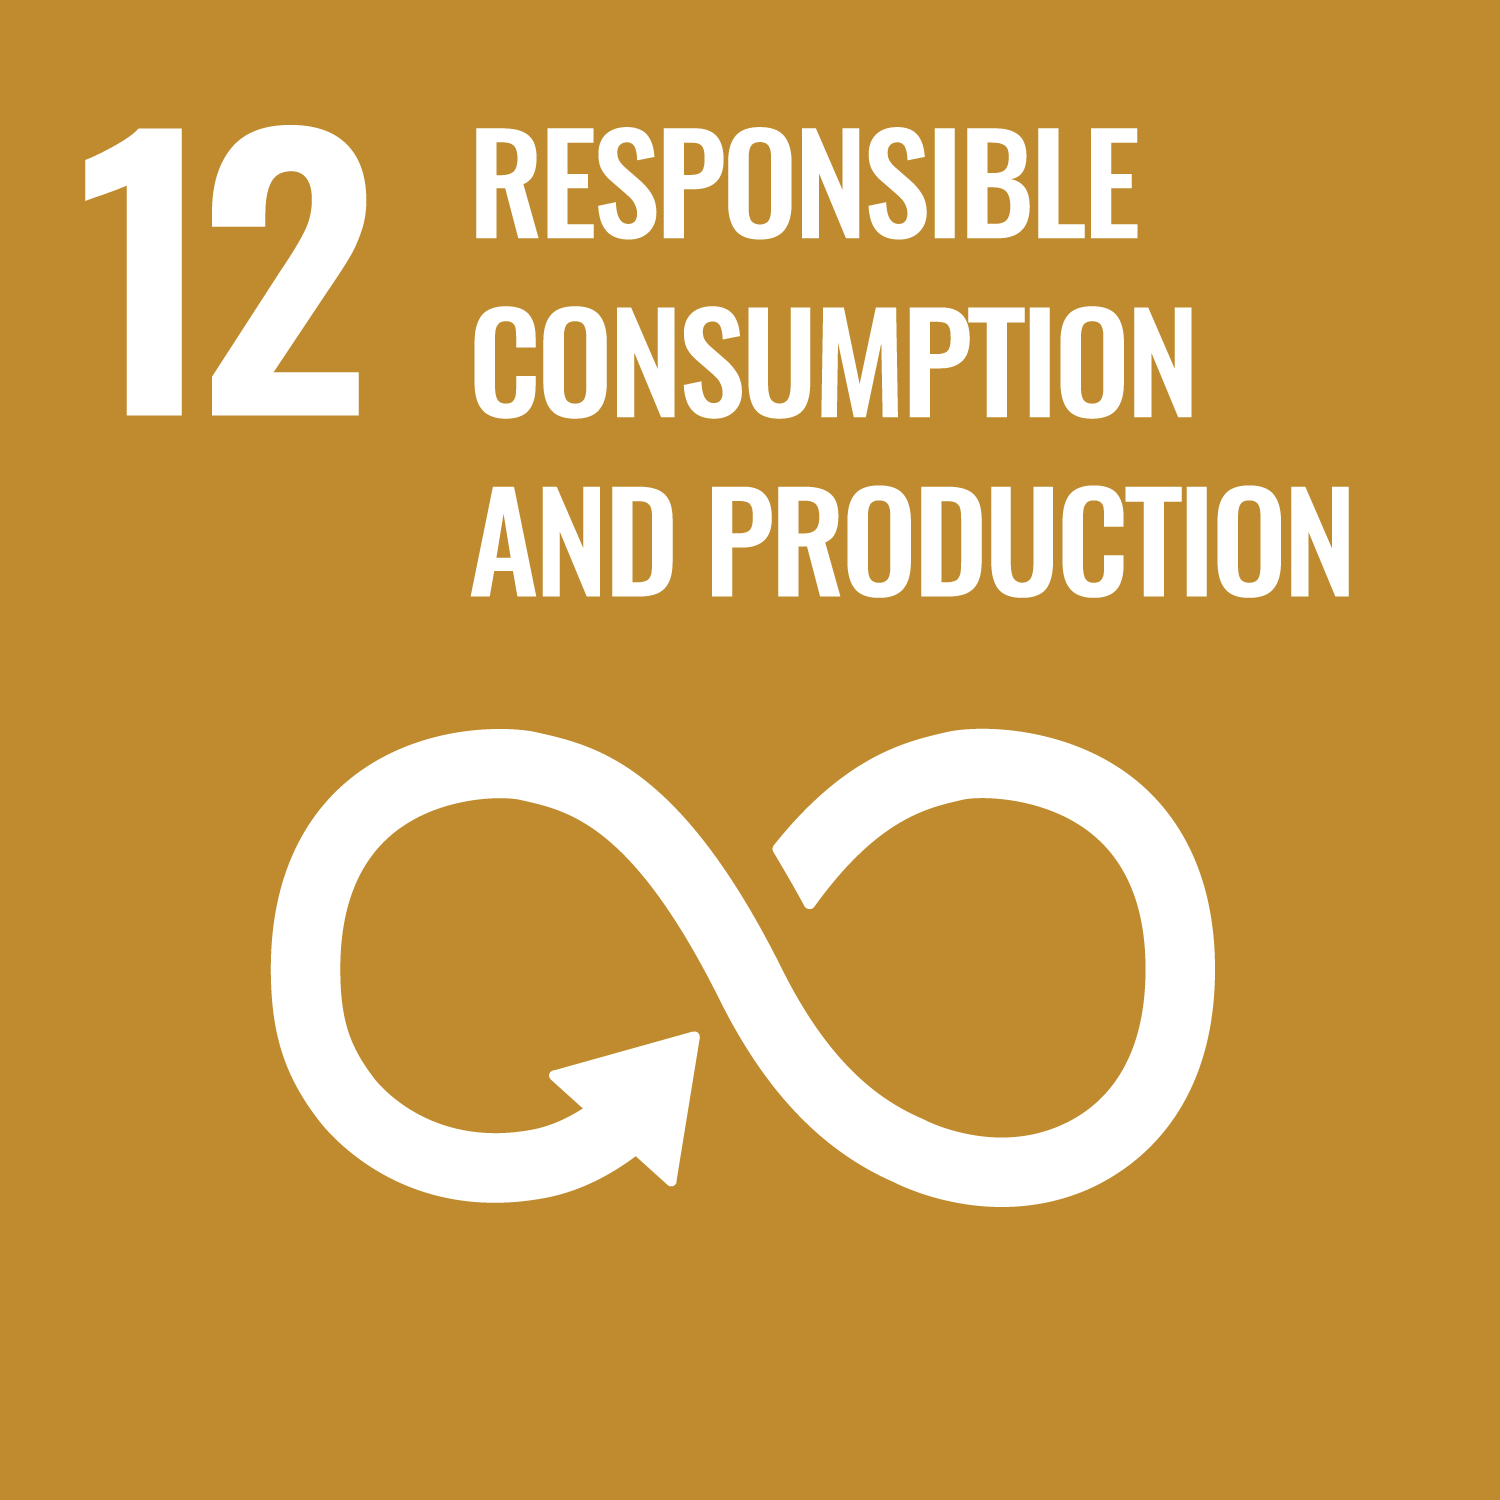  FN:s hållbara utvecklingsmål 12: Hållbart konsumtions- och produktionsmönster symboliseras av en senapsgul ruta med text och siffra "12" överst. Under texten finns en oändlighetsloop med en uppåtpil som böjer sig nedåt, vilket visar på cirkularitet.